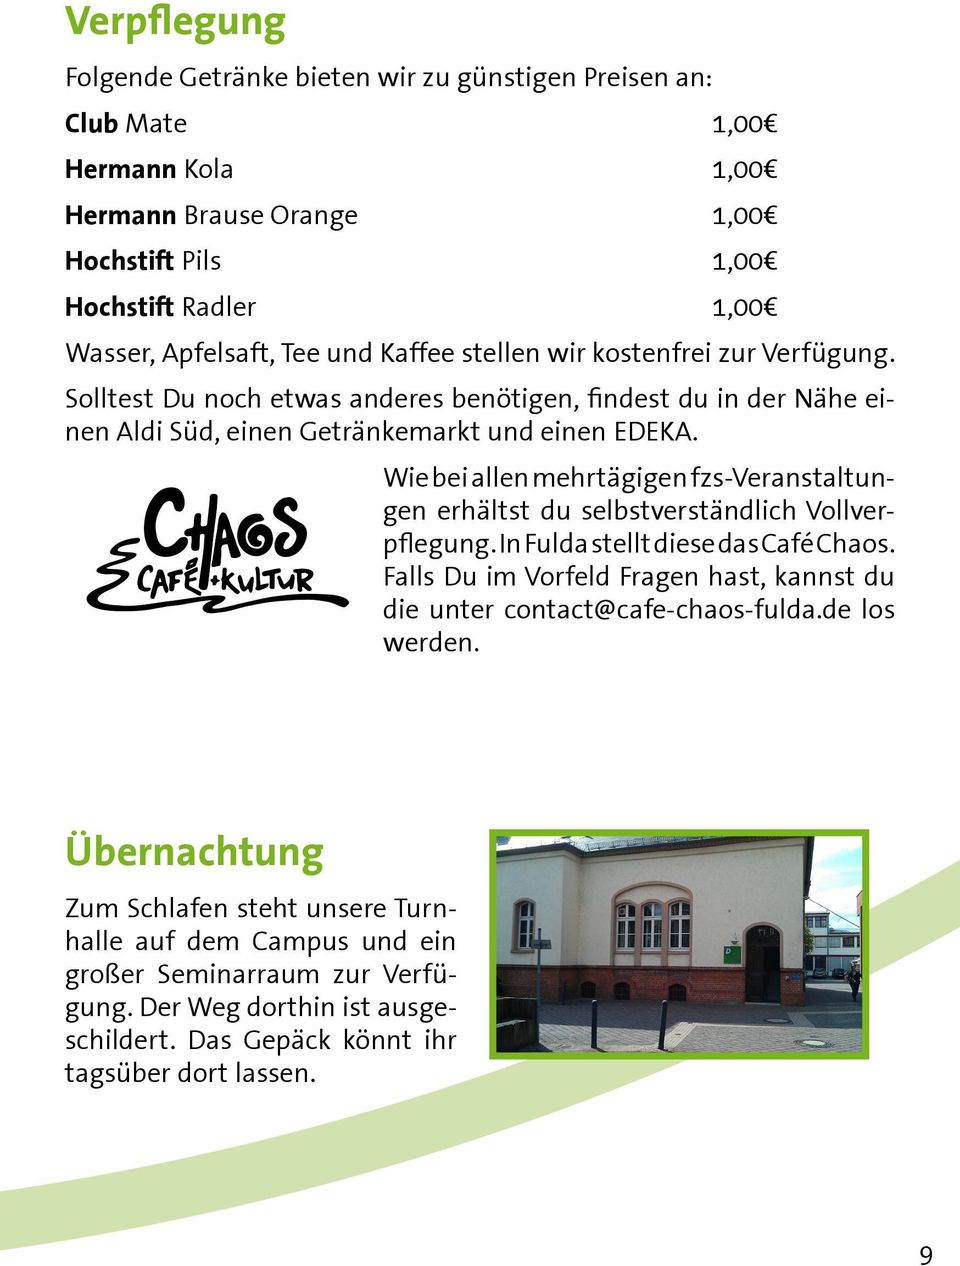 Wie bei allen mehrtägigen fzs-veranstaltungen erhältst du selbstverständlich Vollverpflegung. In Fulda stellt diese das Café Chaos.